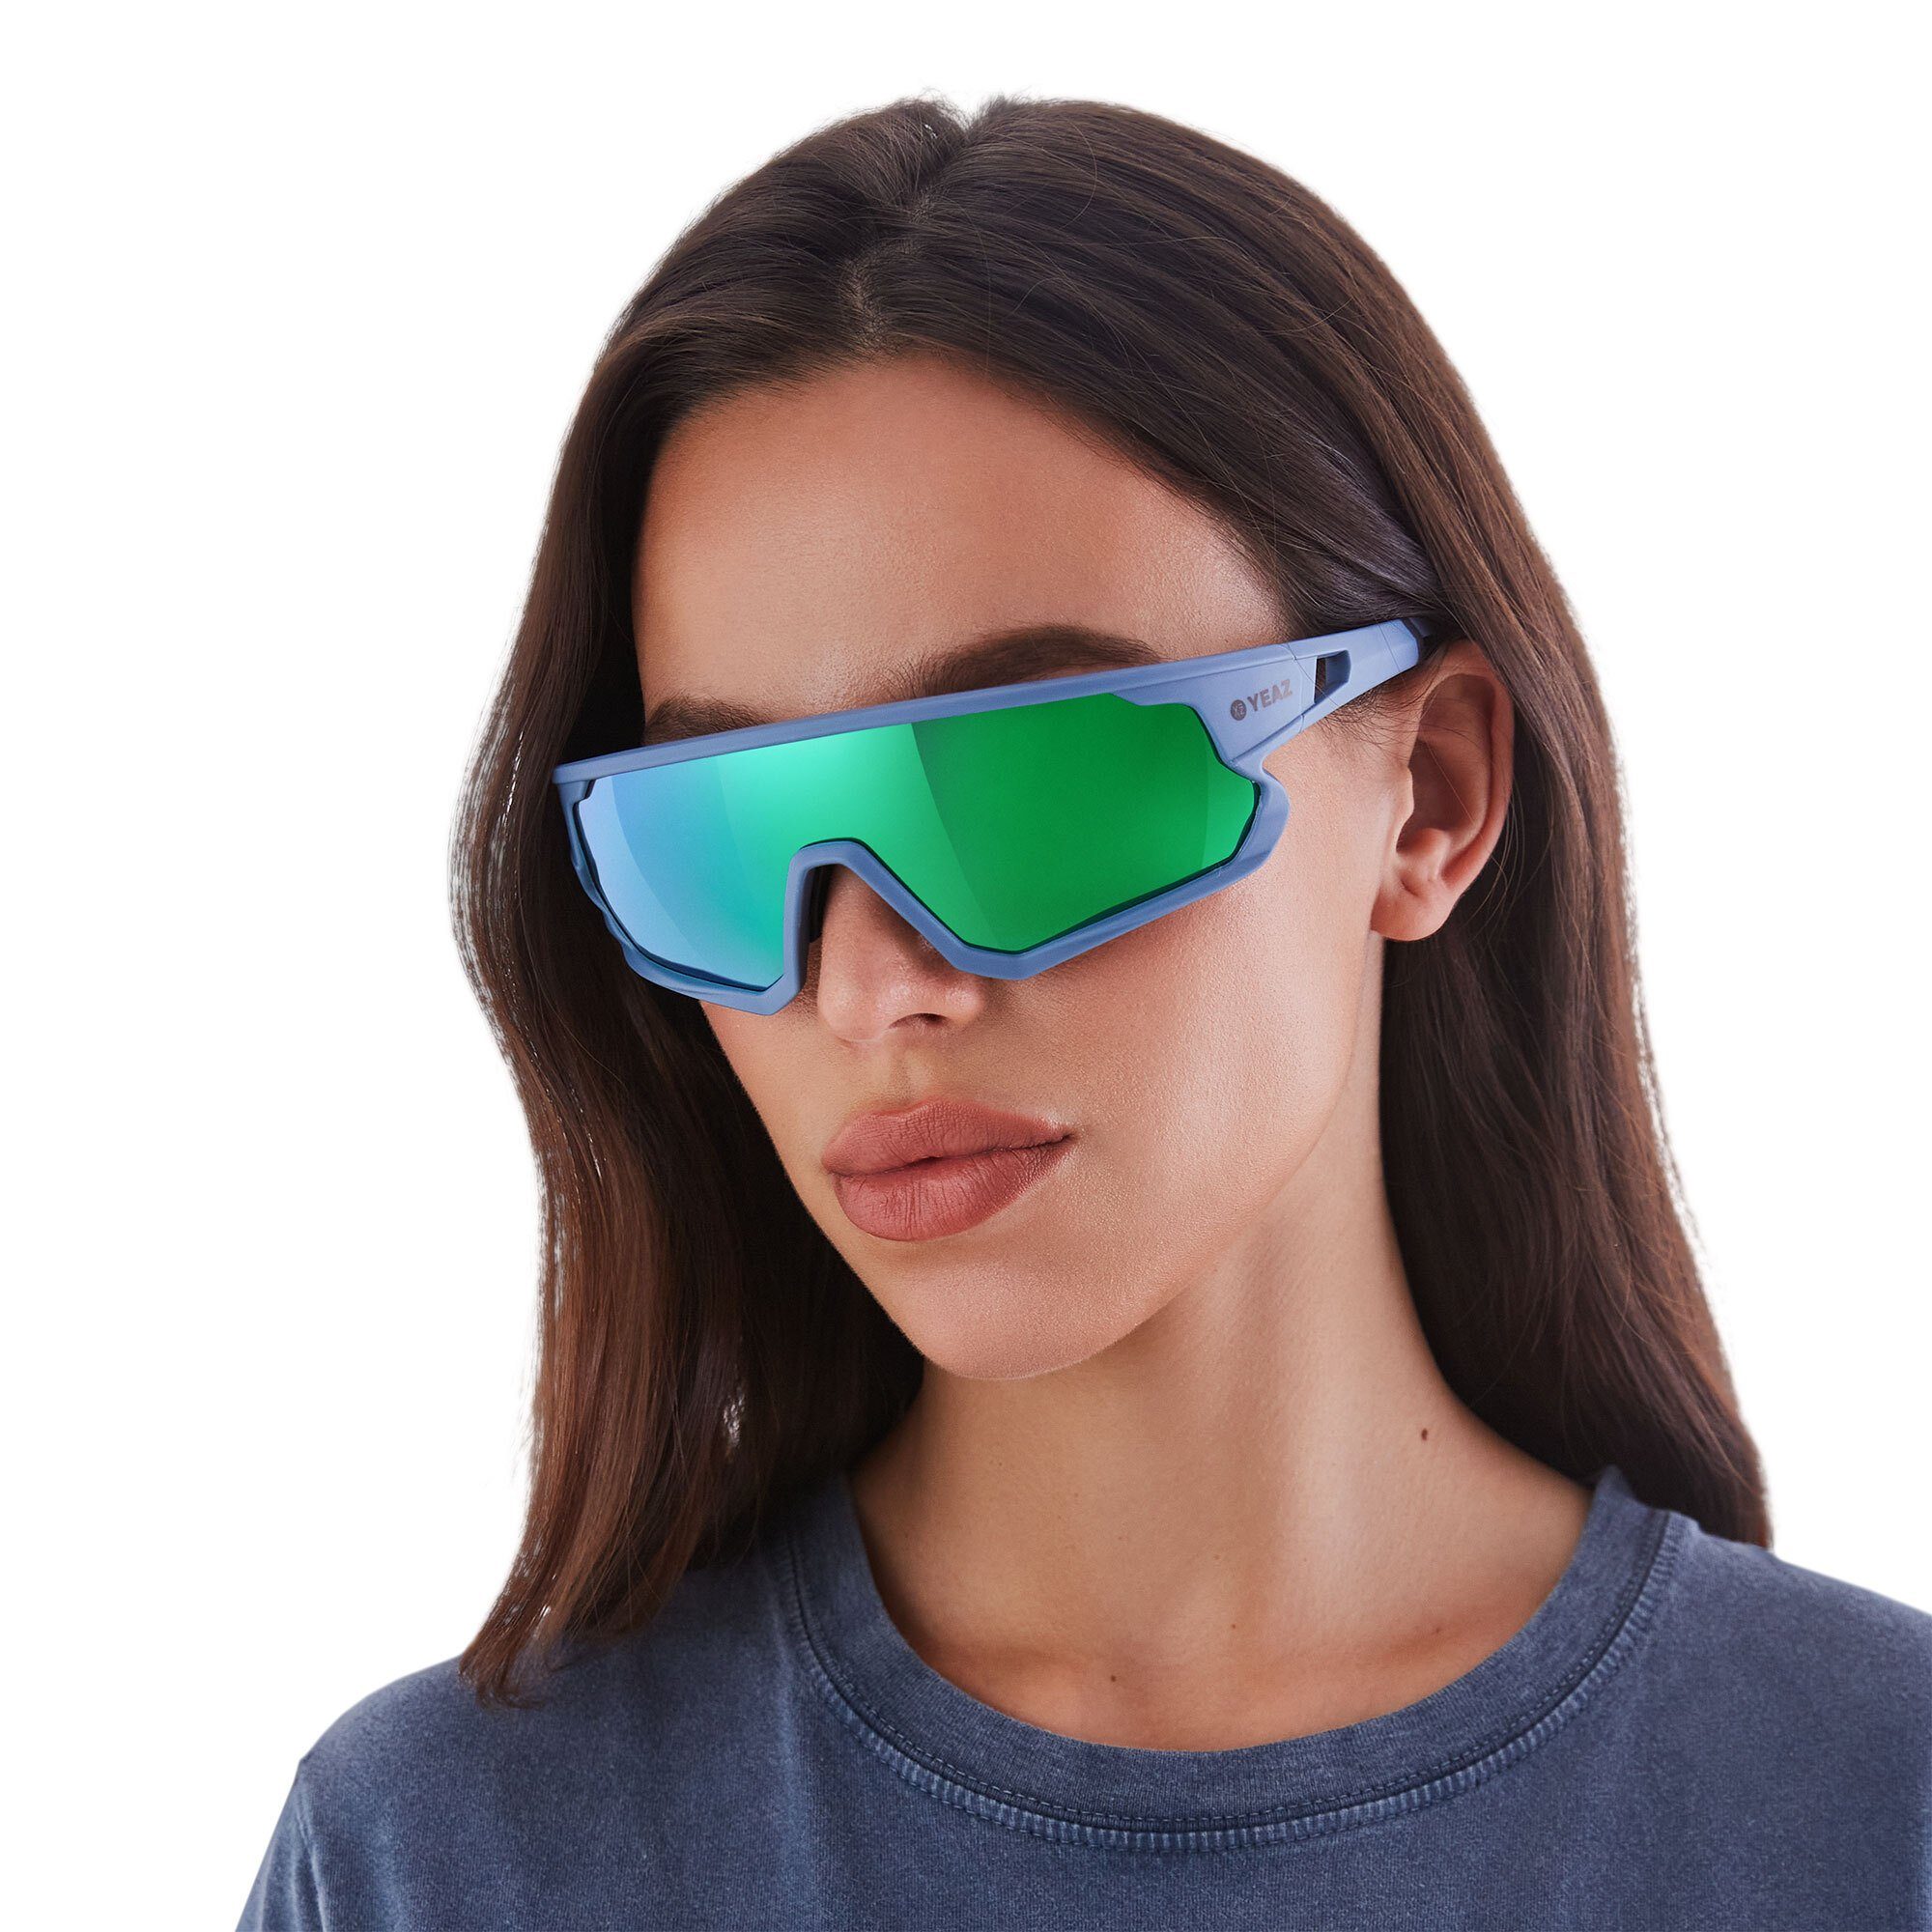 YEAZ Schutz Sicht bei Guter blue/green, sport-sonnenbrille Sportbrille cyan SUNRISE optimierter